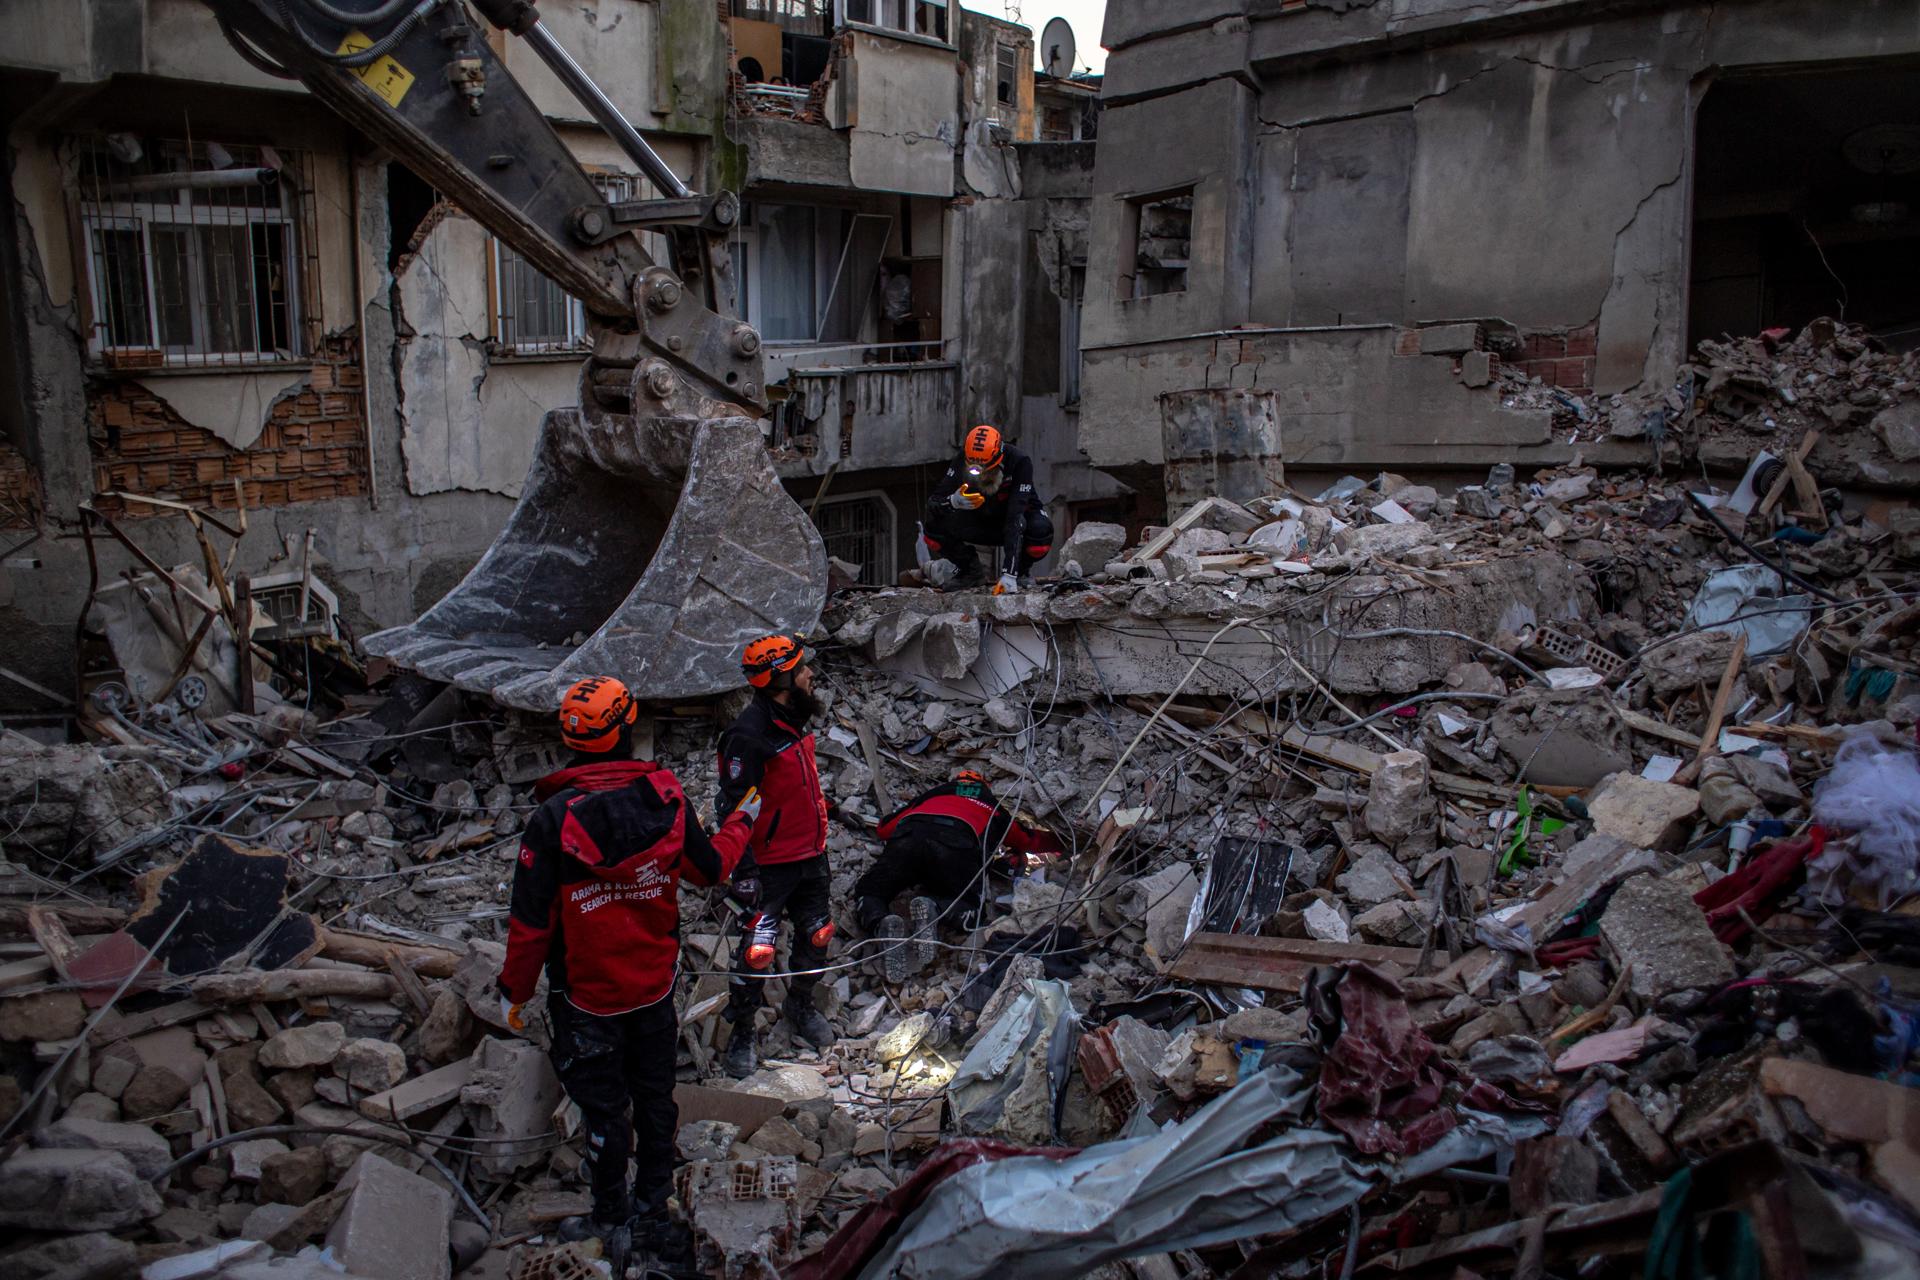 Mor en un incendi una família siriana rescatada del terratrèmol de Turquia